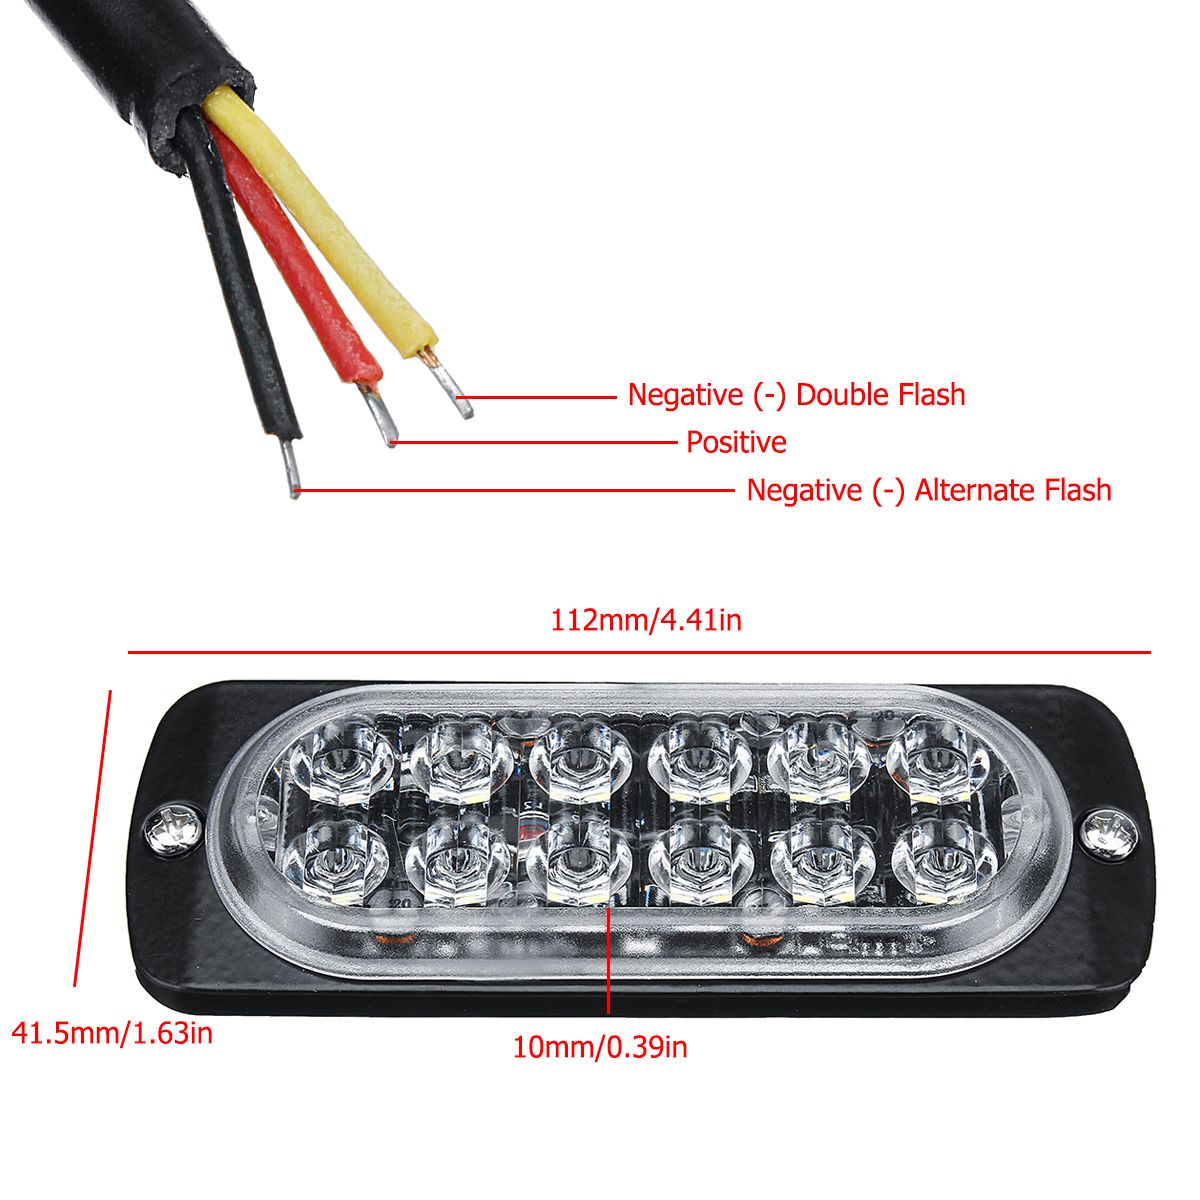 12-LED-Amber-Car-Emergency-Flashing-Light-vehicle-Strobe-Flash-Warning-Lamp-6500K-1224V-36W-1587504